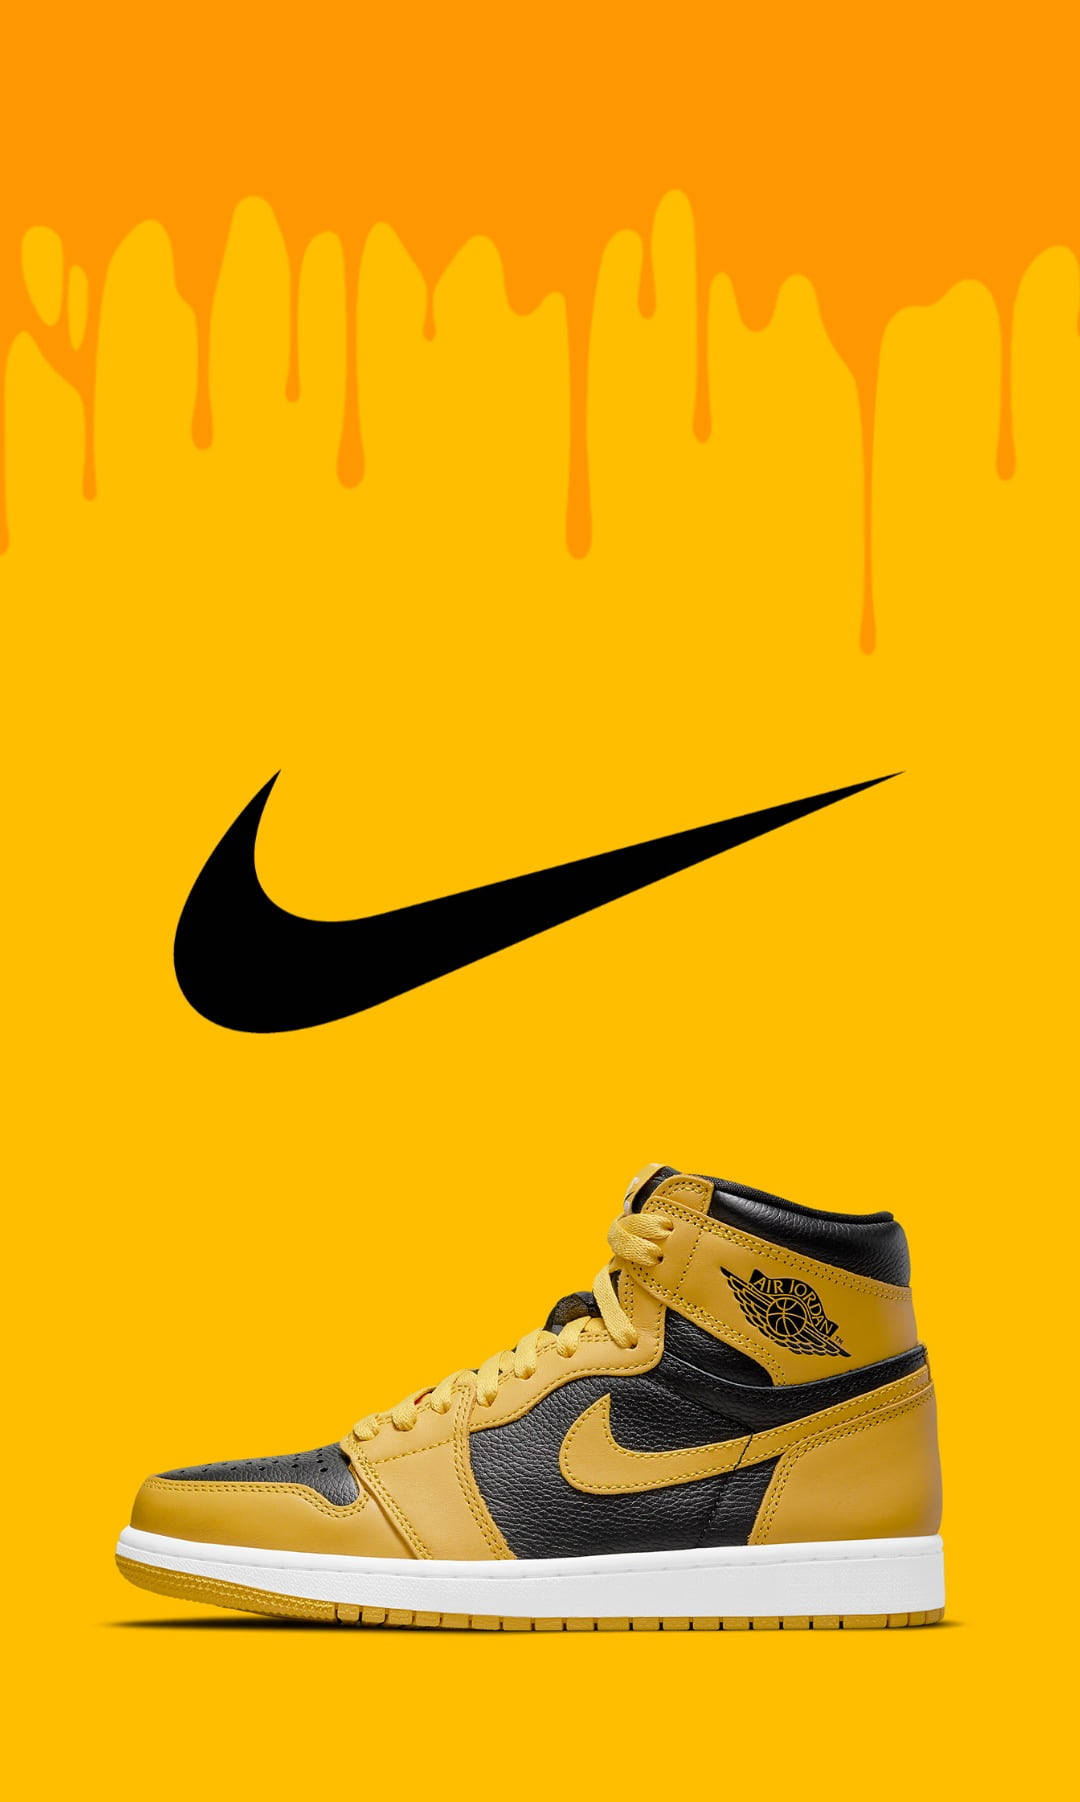 Alteschule Nike Jordan 1 Wallpaper